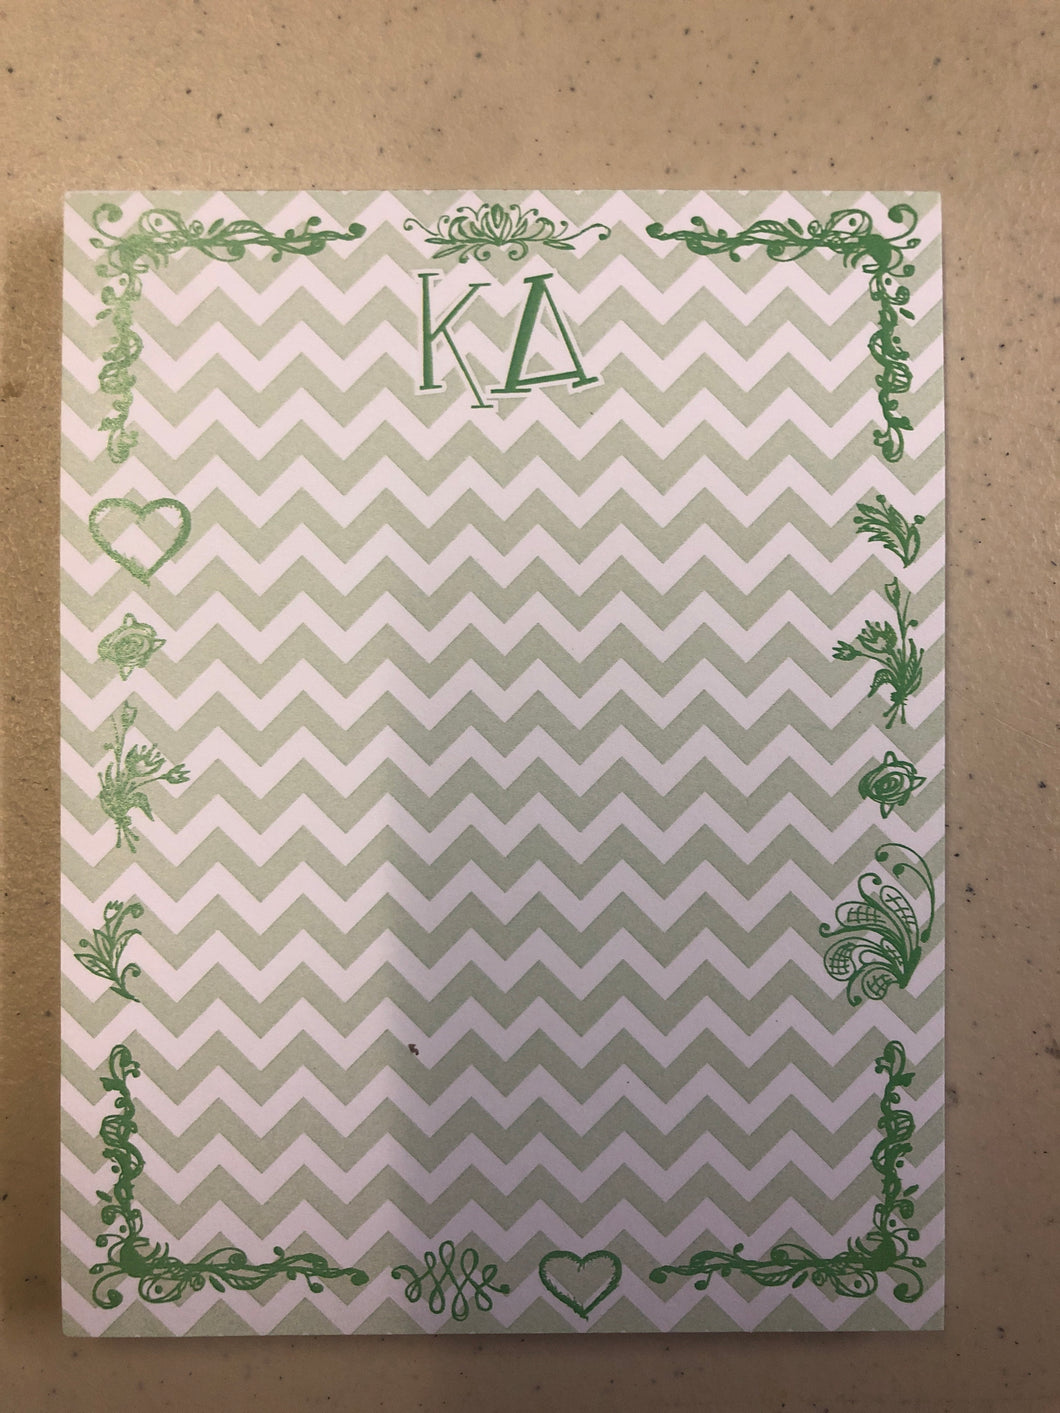 Chevron Notepad- Kappa Delta